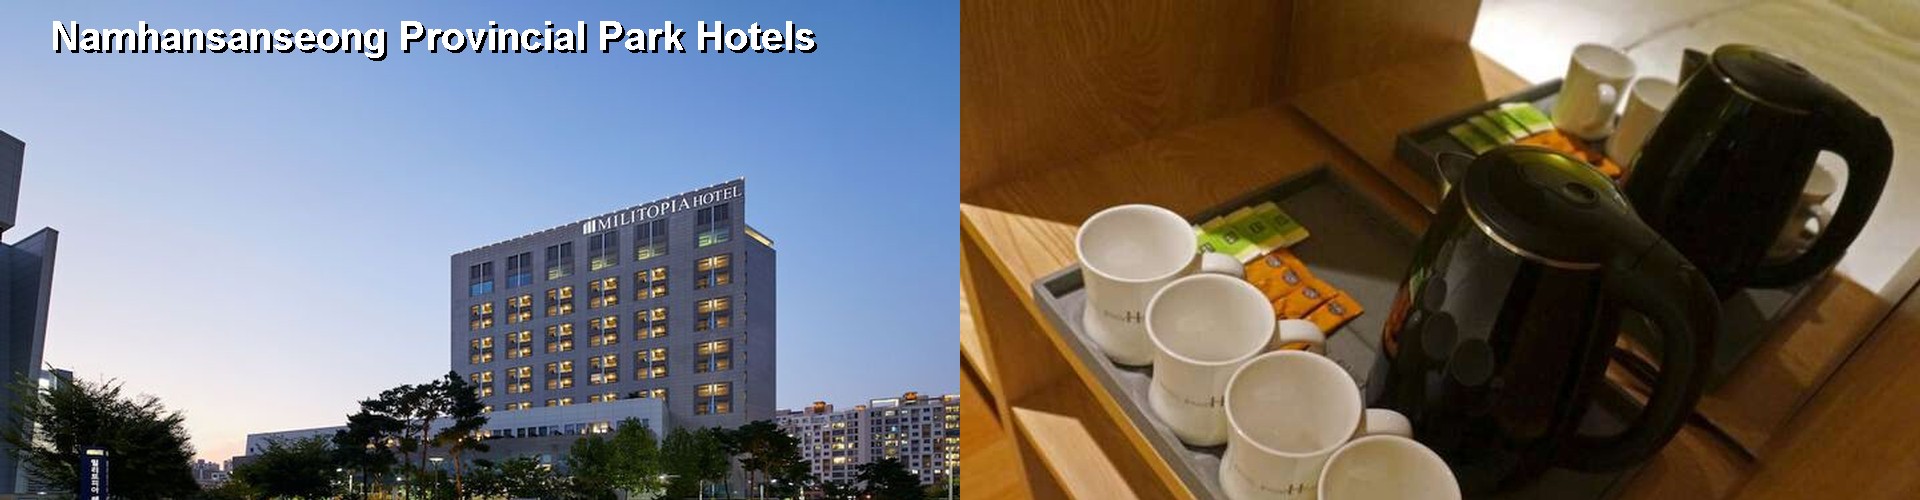 5 Best Hotels near Namhansanseong Provincial Park